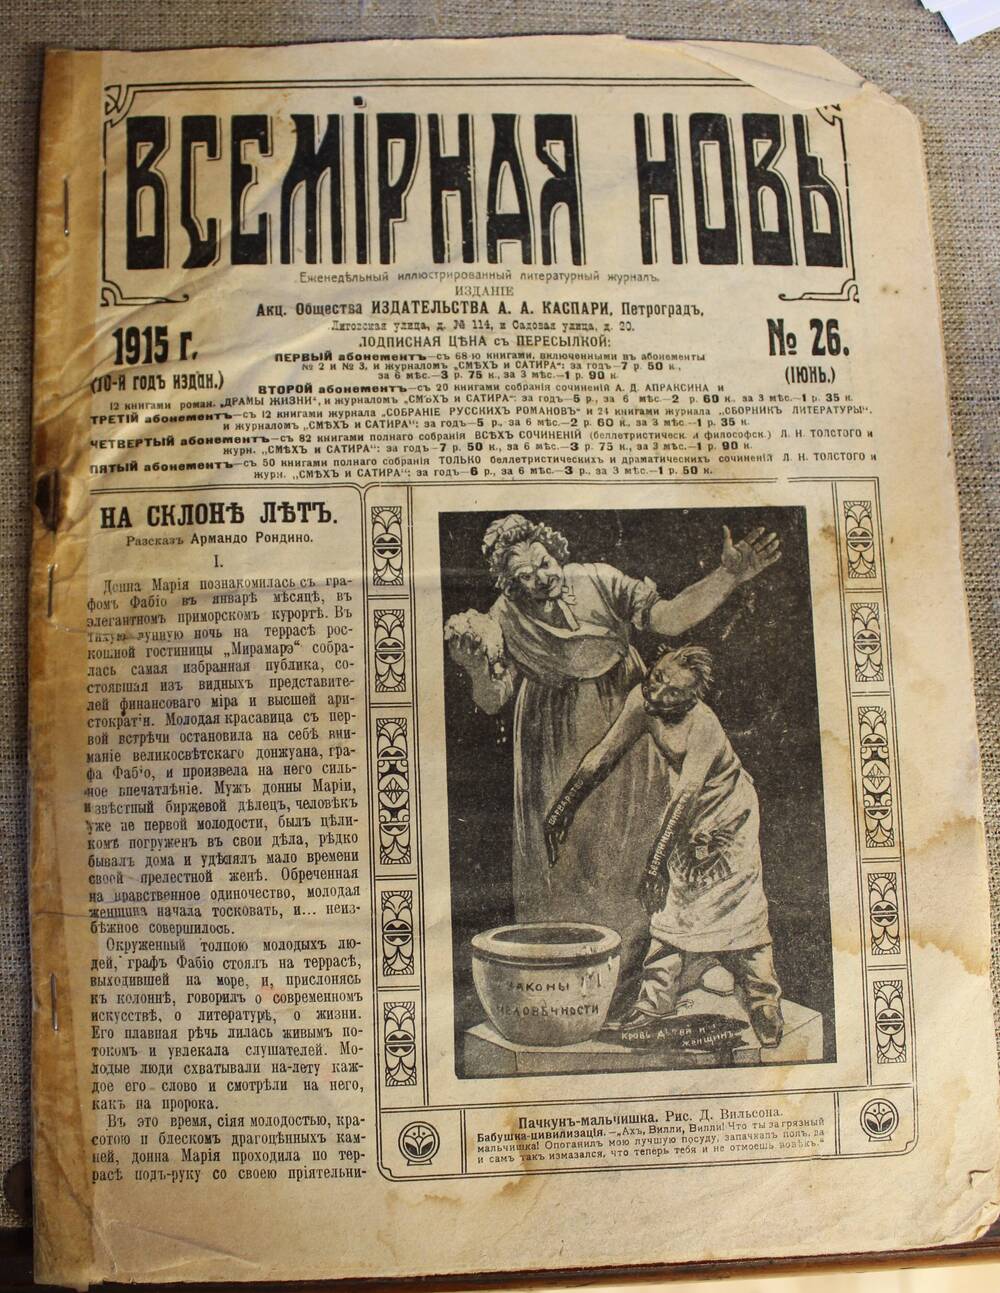 Журнал. Всемирная новь. № 26, 1915 г.